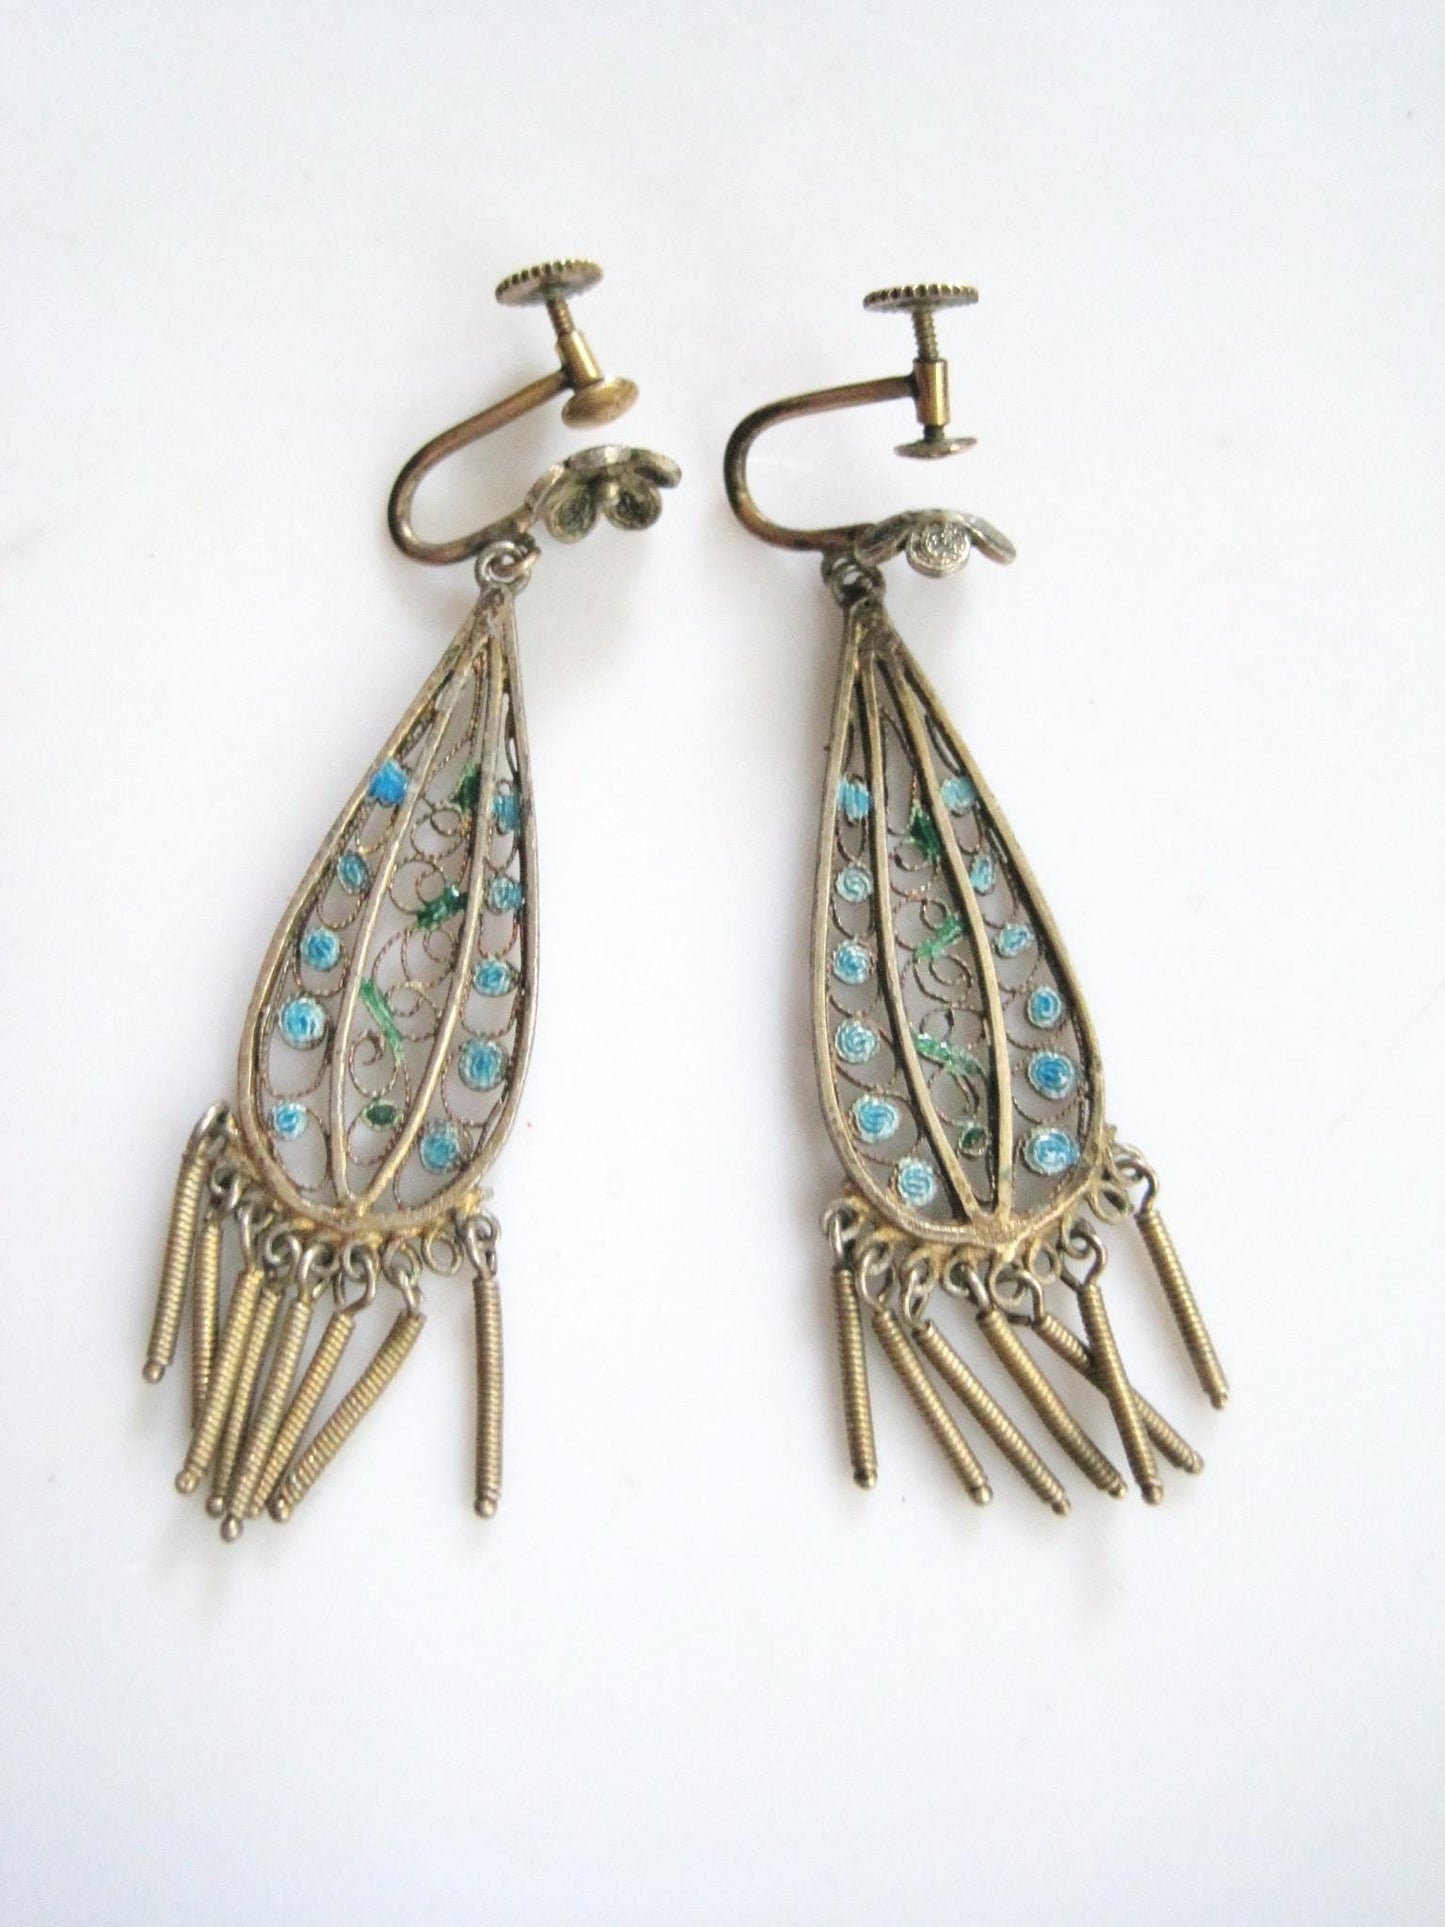 silver and enamel earrings